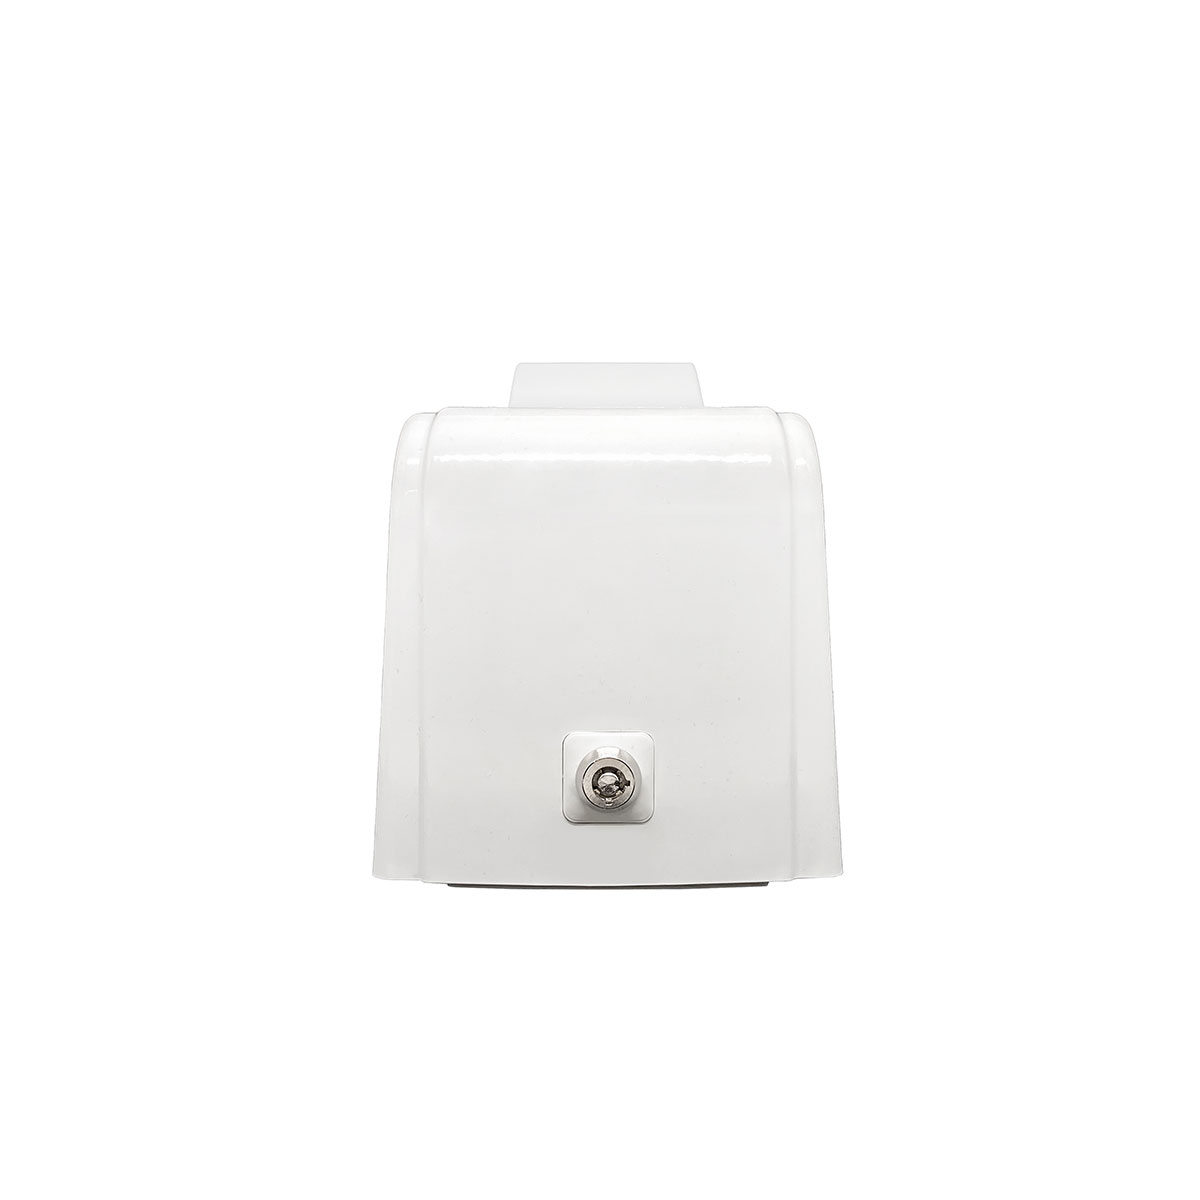 Дозатор для пены X12 нажимной 1,2л БИЗНЕС, корпус белый, стекла прозрачные, кнопка белая фото 3